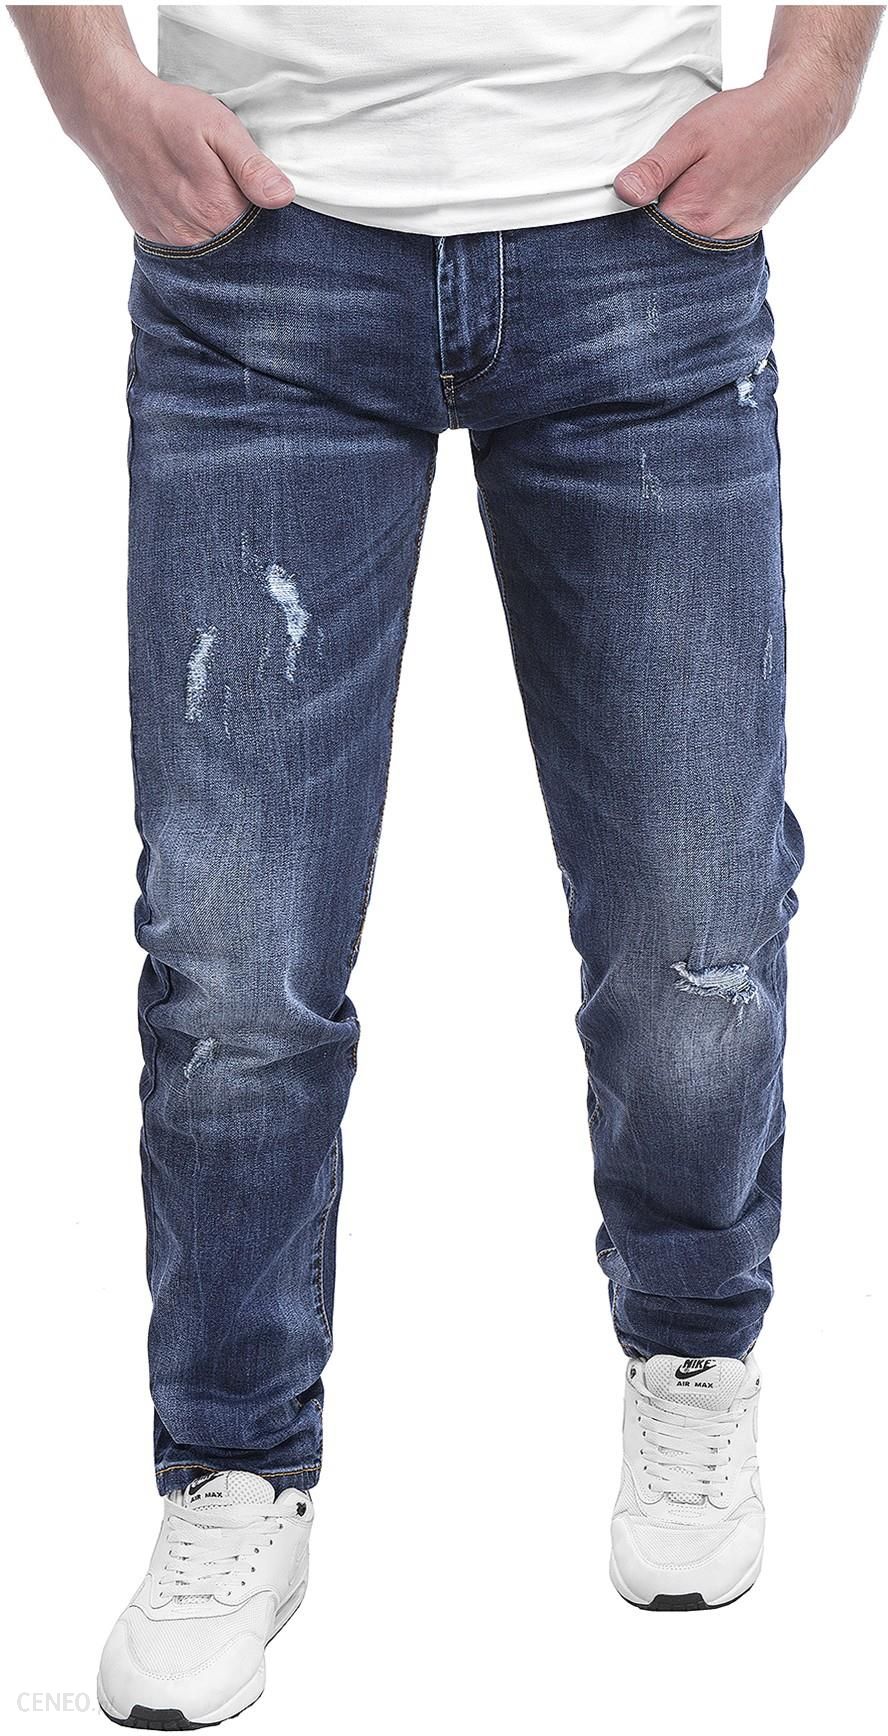  Spodnie męskie jeansowe SM663